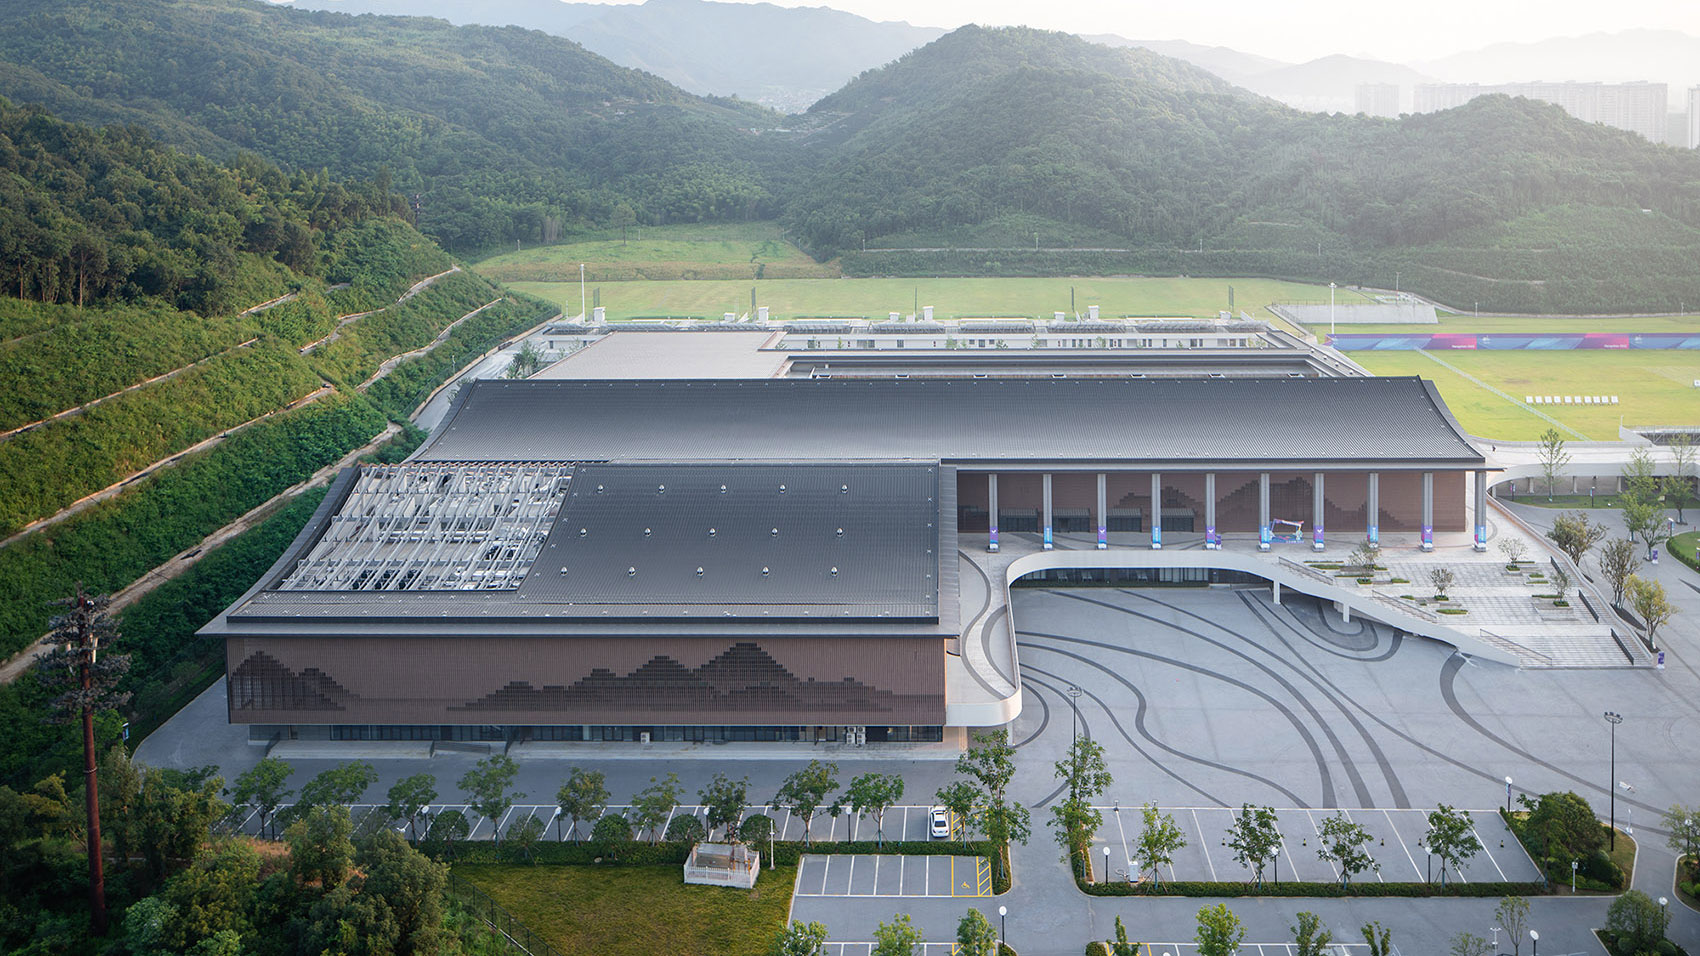 Innovación: fachada móvil en un centro deportivo, Hangzhou, China (+VÍDEO)